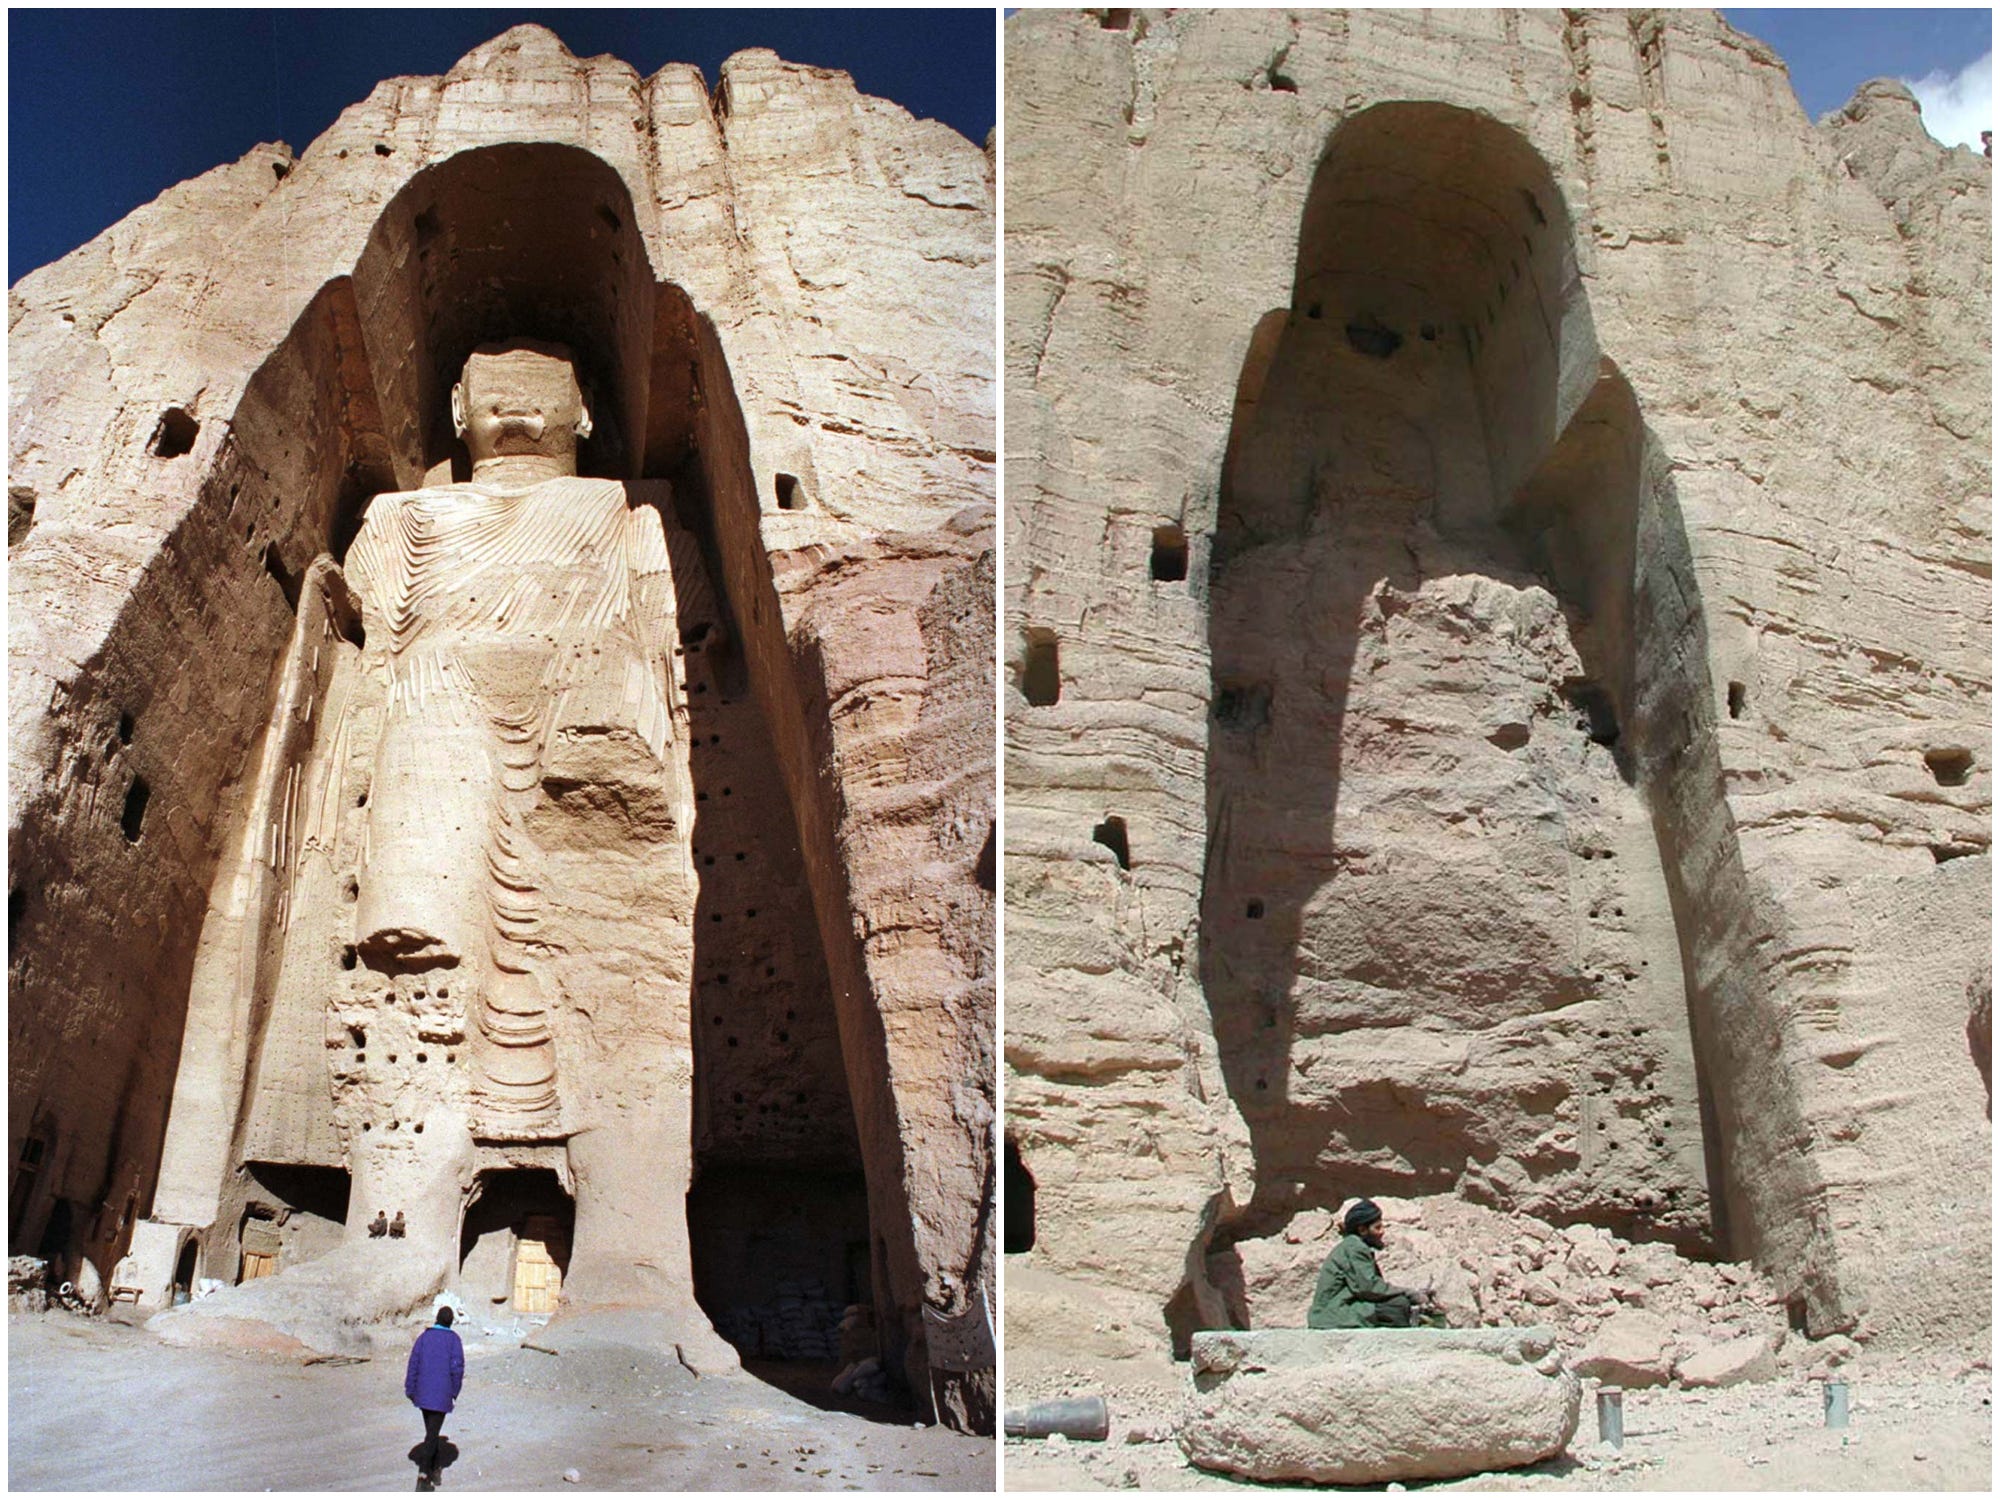 Die Bilder nebeneinander zeigen einen der Bamiyan-Buddhas – eine gewaltige Statue, die in eine Nische im Fels gehauen wurde – im Jahr 1997 und einen Blick auf einen von ihnen, einen unscheinbaren Felshaufen, der 2001 mitten im Abriss stand.